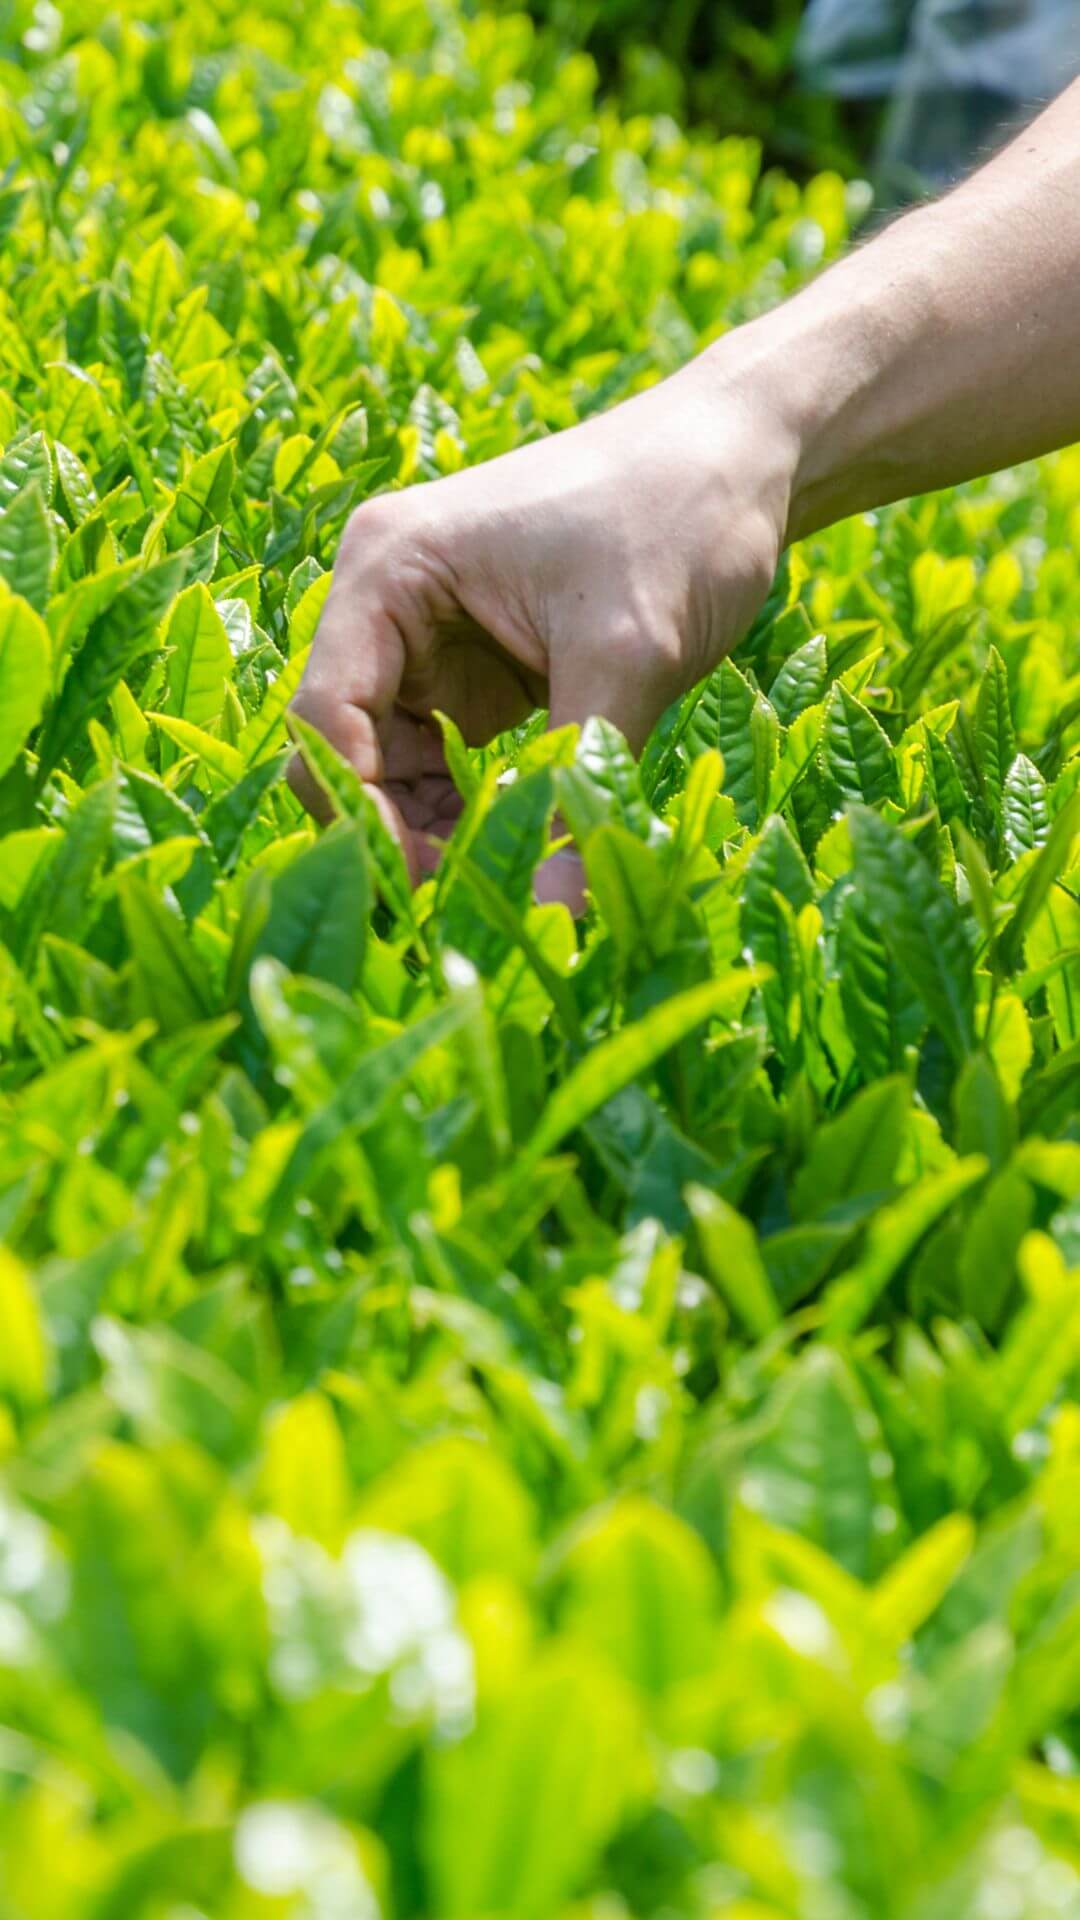 henta tea farm in japan